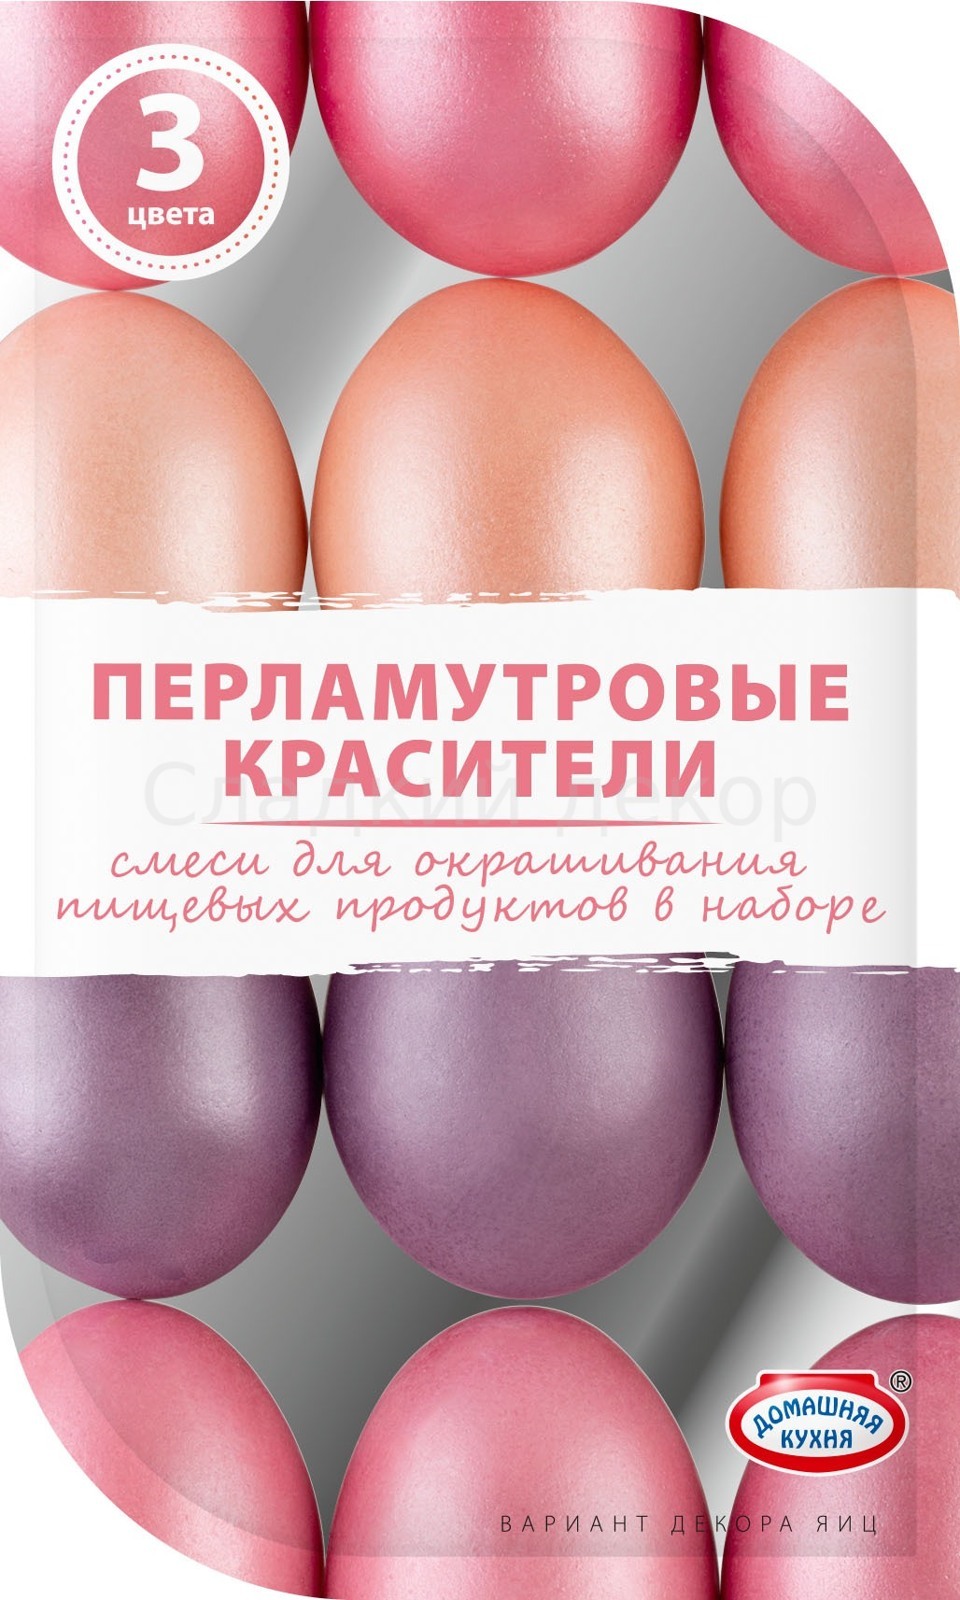 Красители для пасхальных яиц жидкие, "Перламутровые" 3 цвета